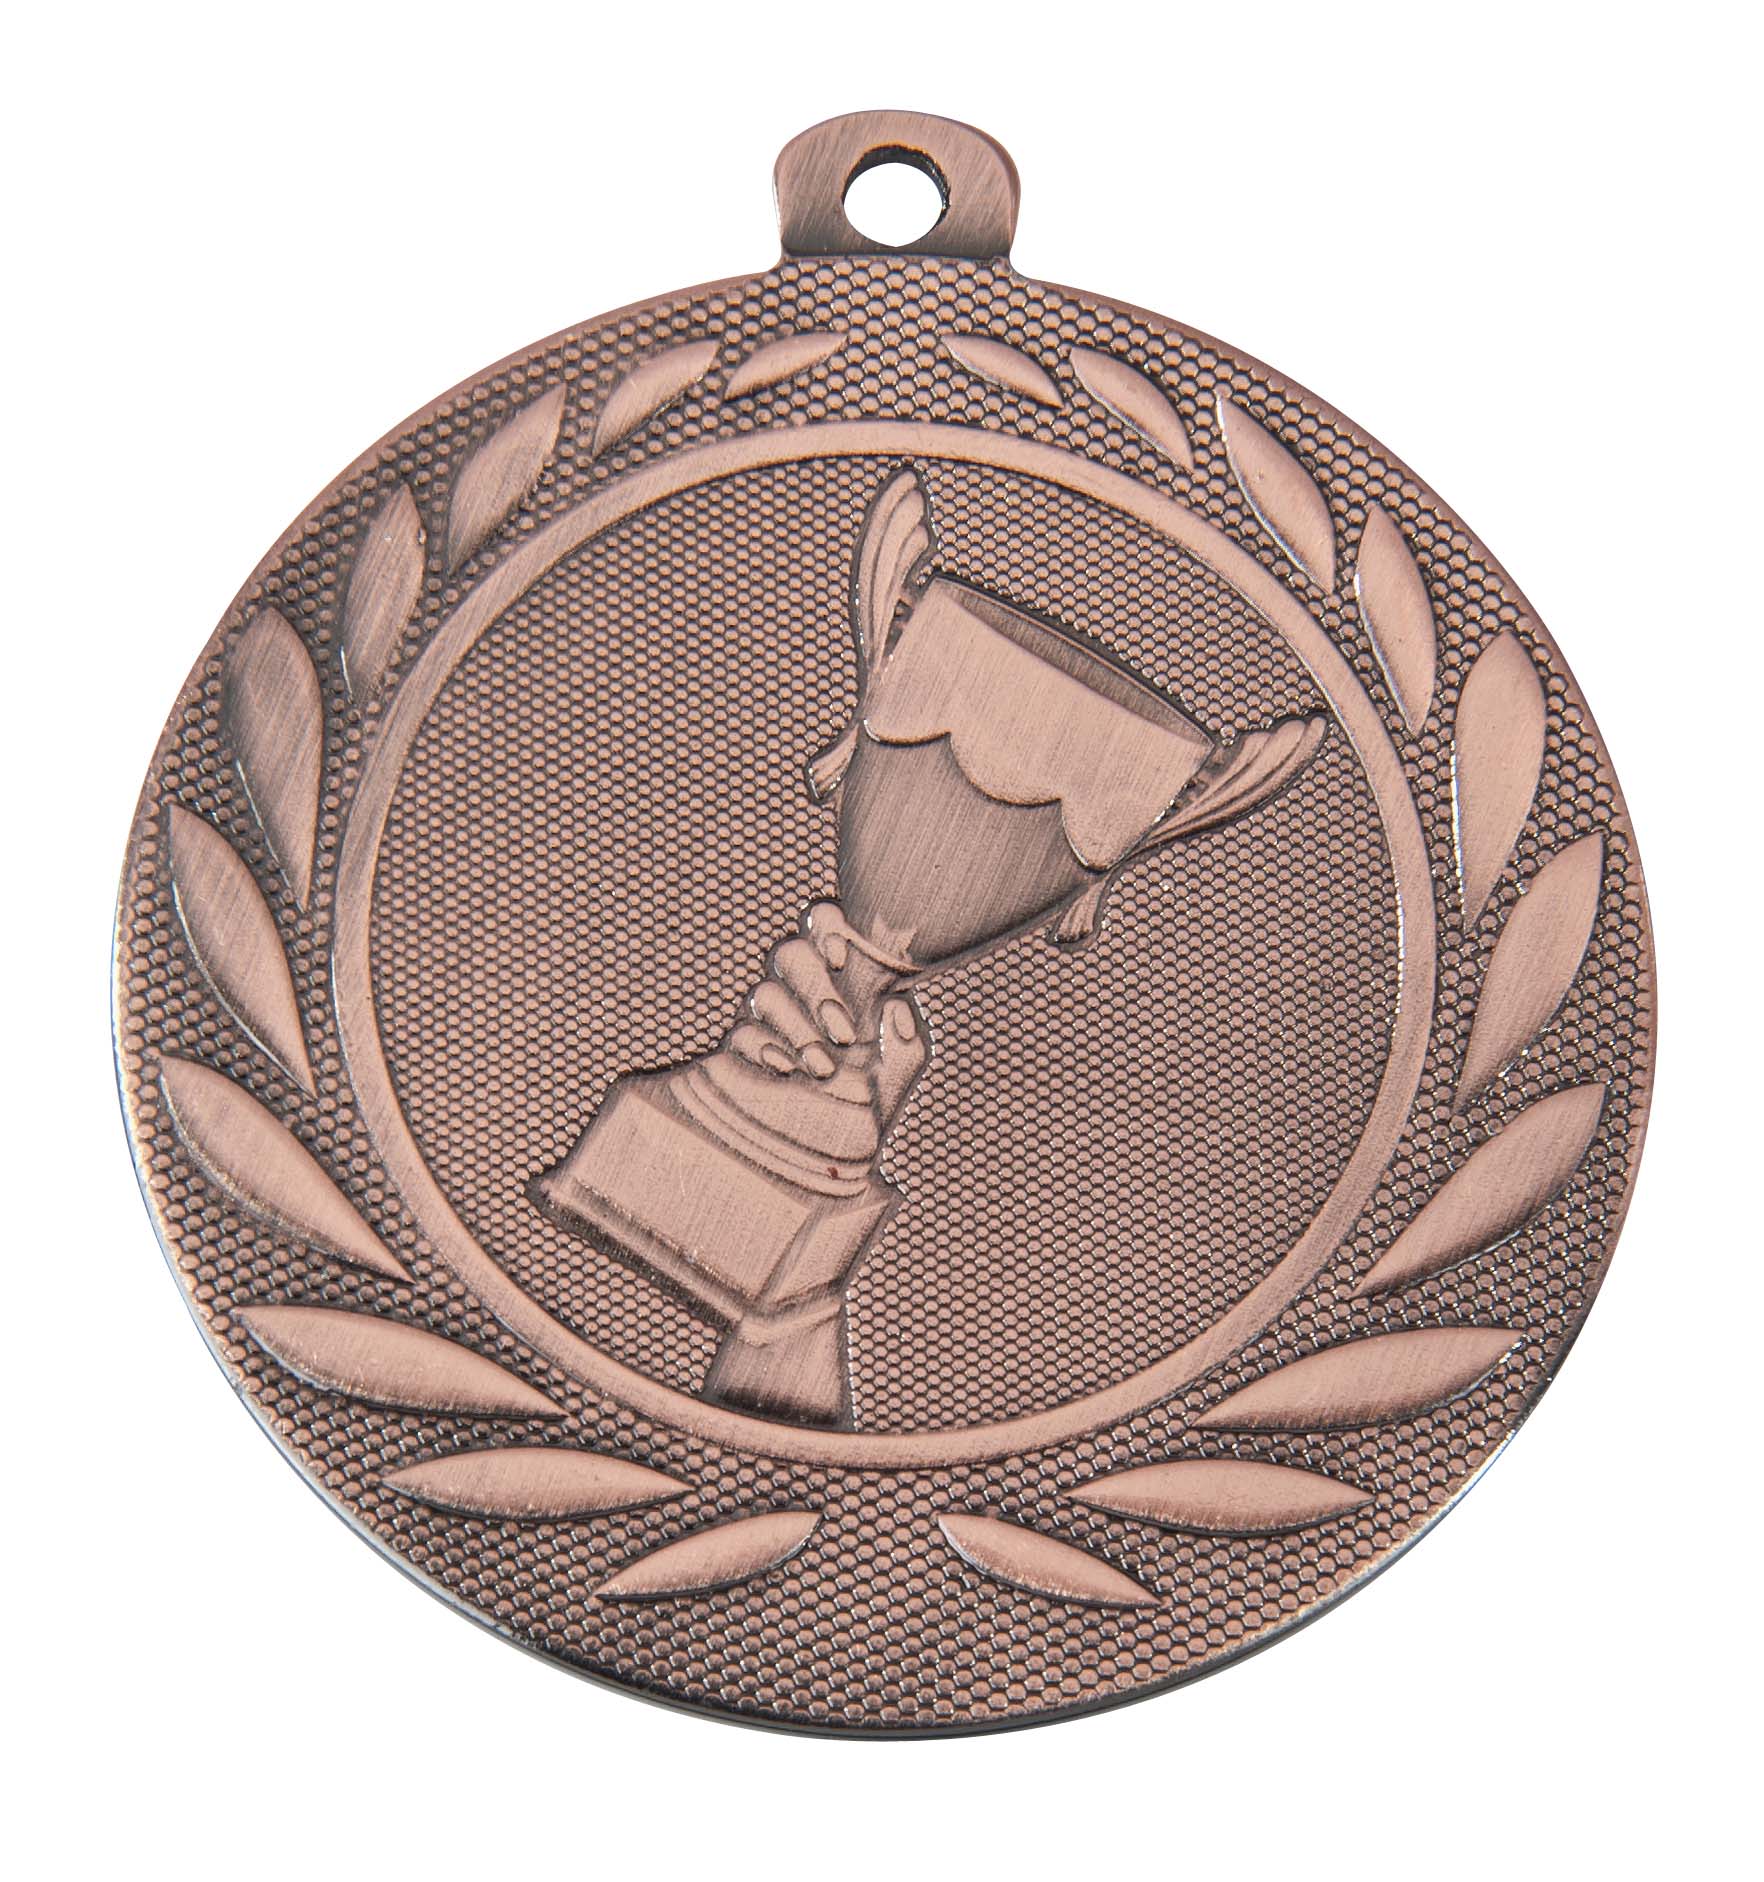 Medaille DI5000A inkl. Band und Beschriftung Bronze Fertig montiert gegen Aufpreis